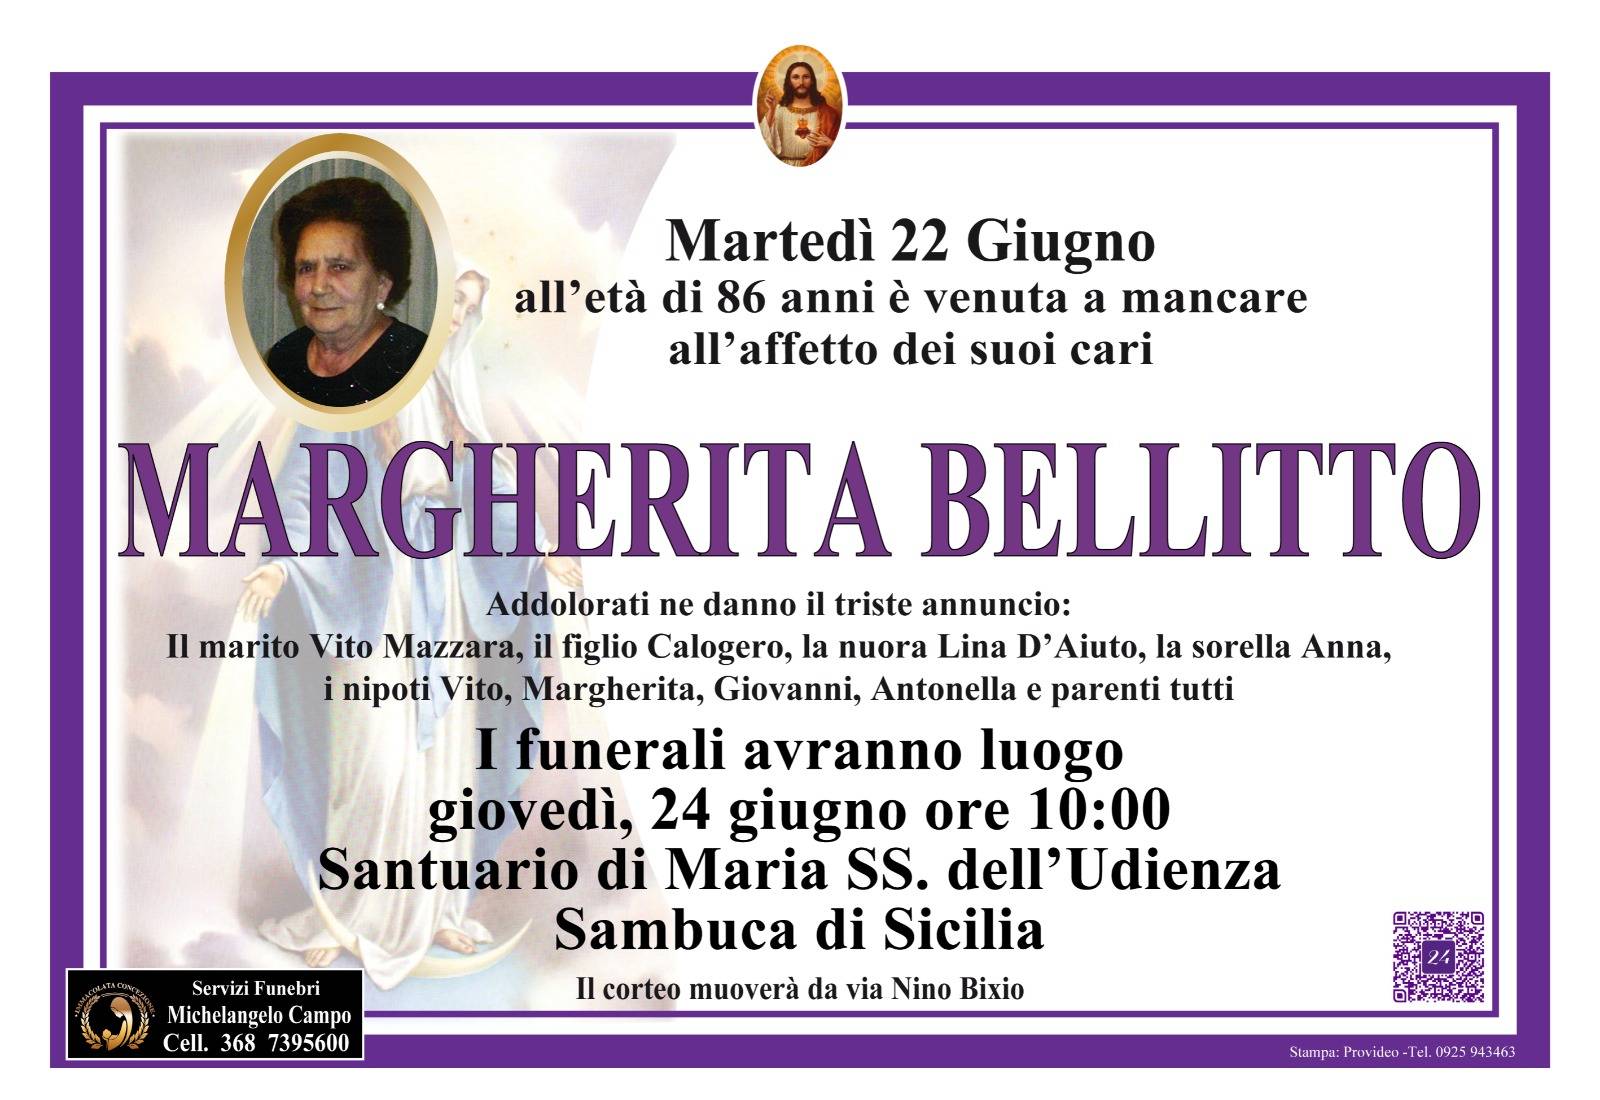 Margherita Bellitto